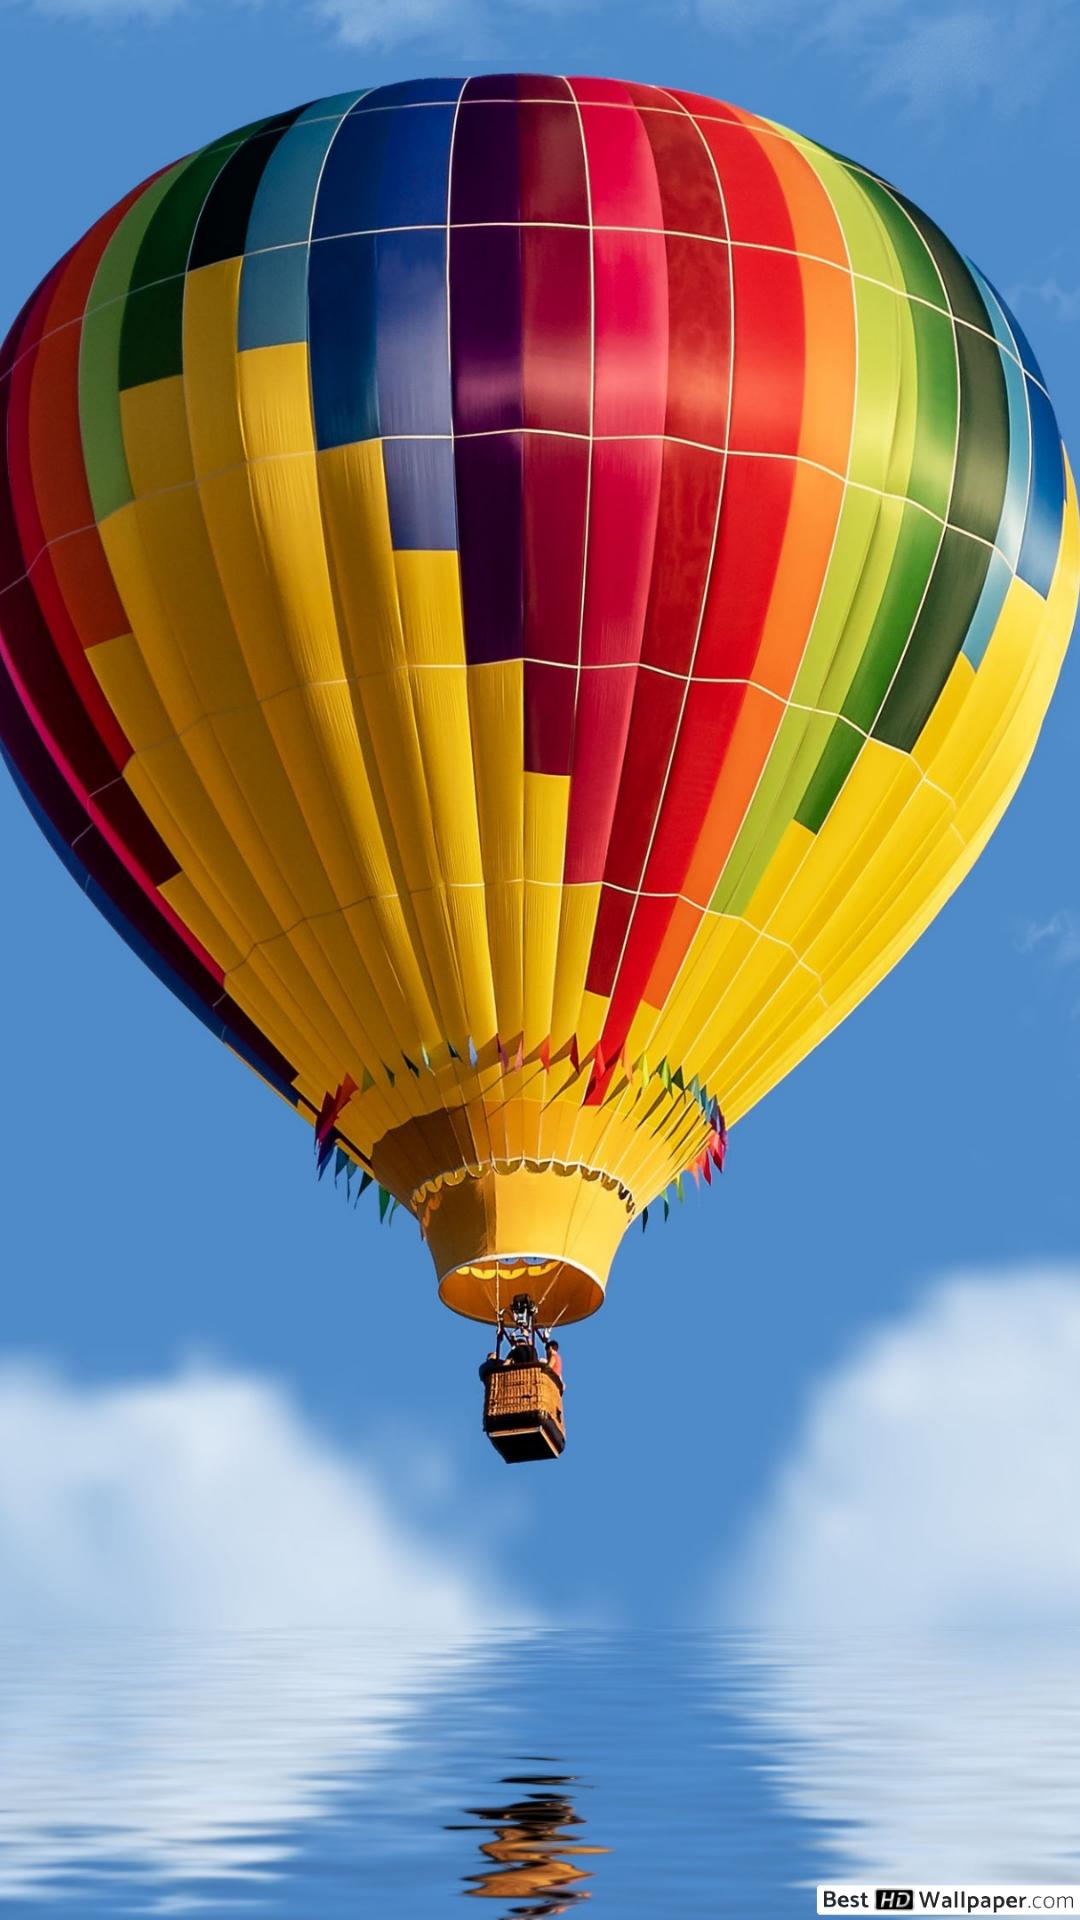 Hot Air Balloon - 1080x1920 Wallpaper - teahub.io